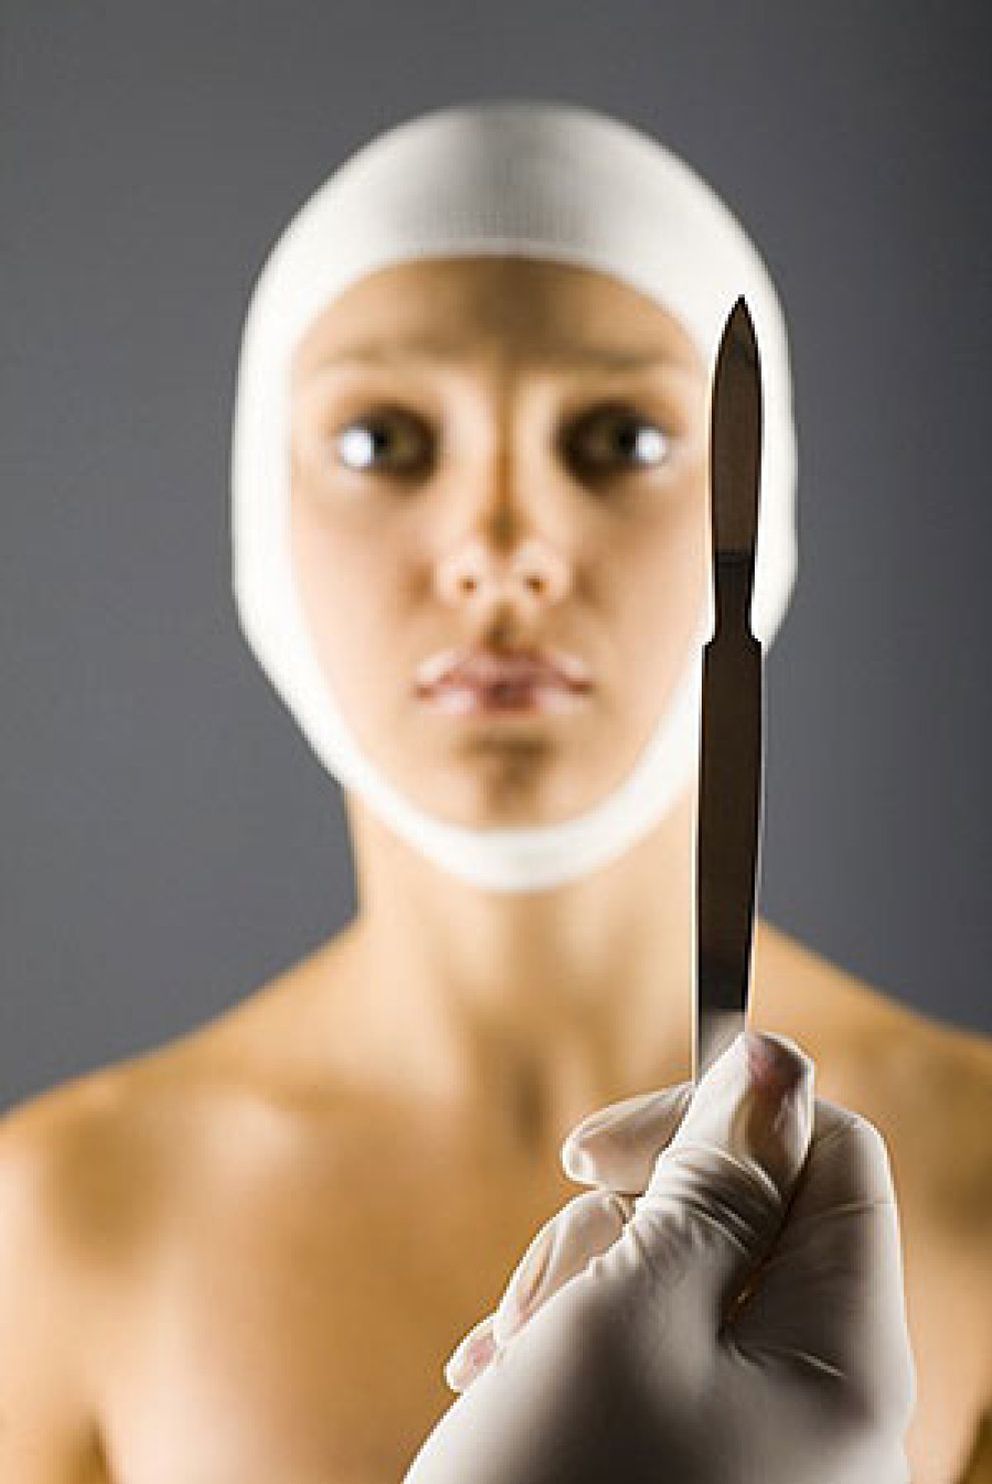 Foto: ¿Quiere hacerse una cirugía estética? Debe estar atento